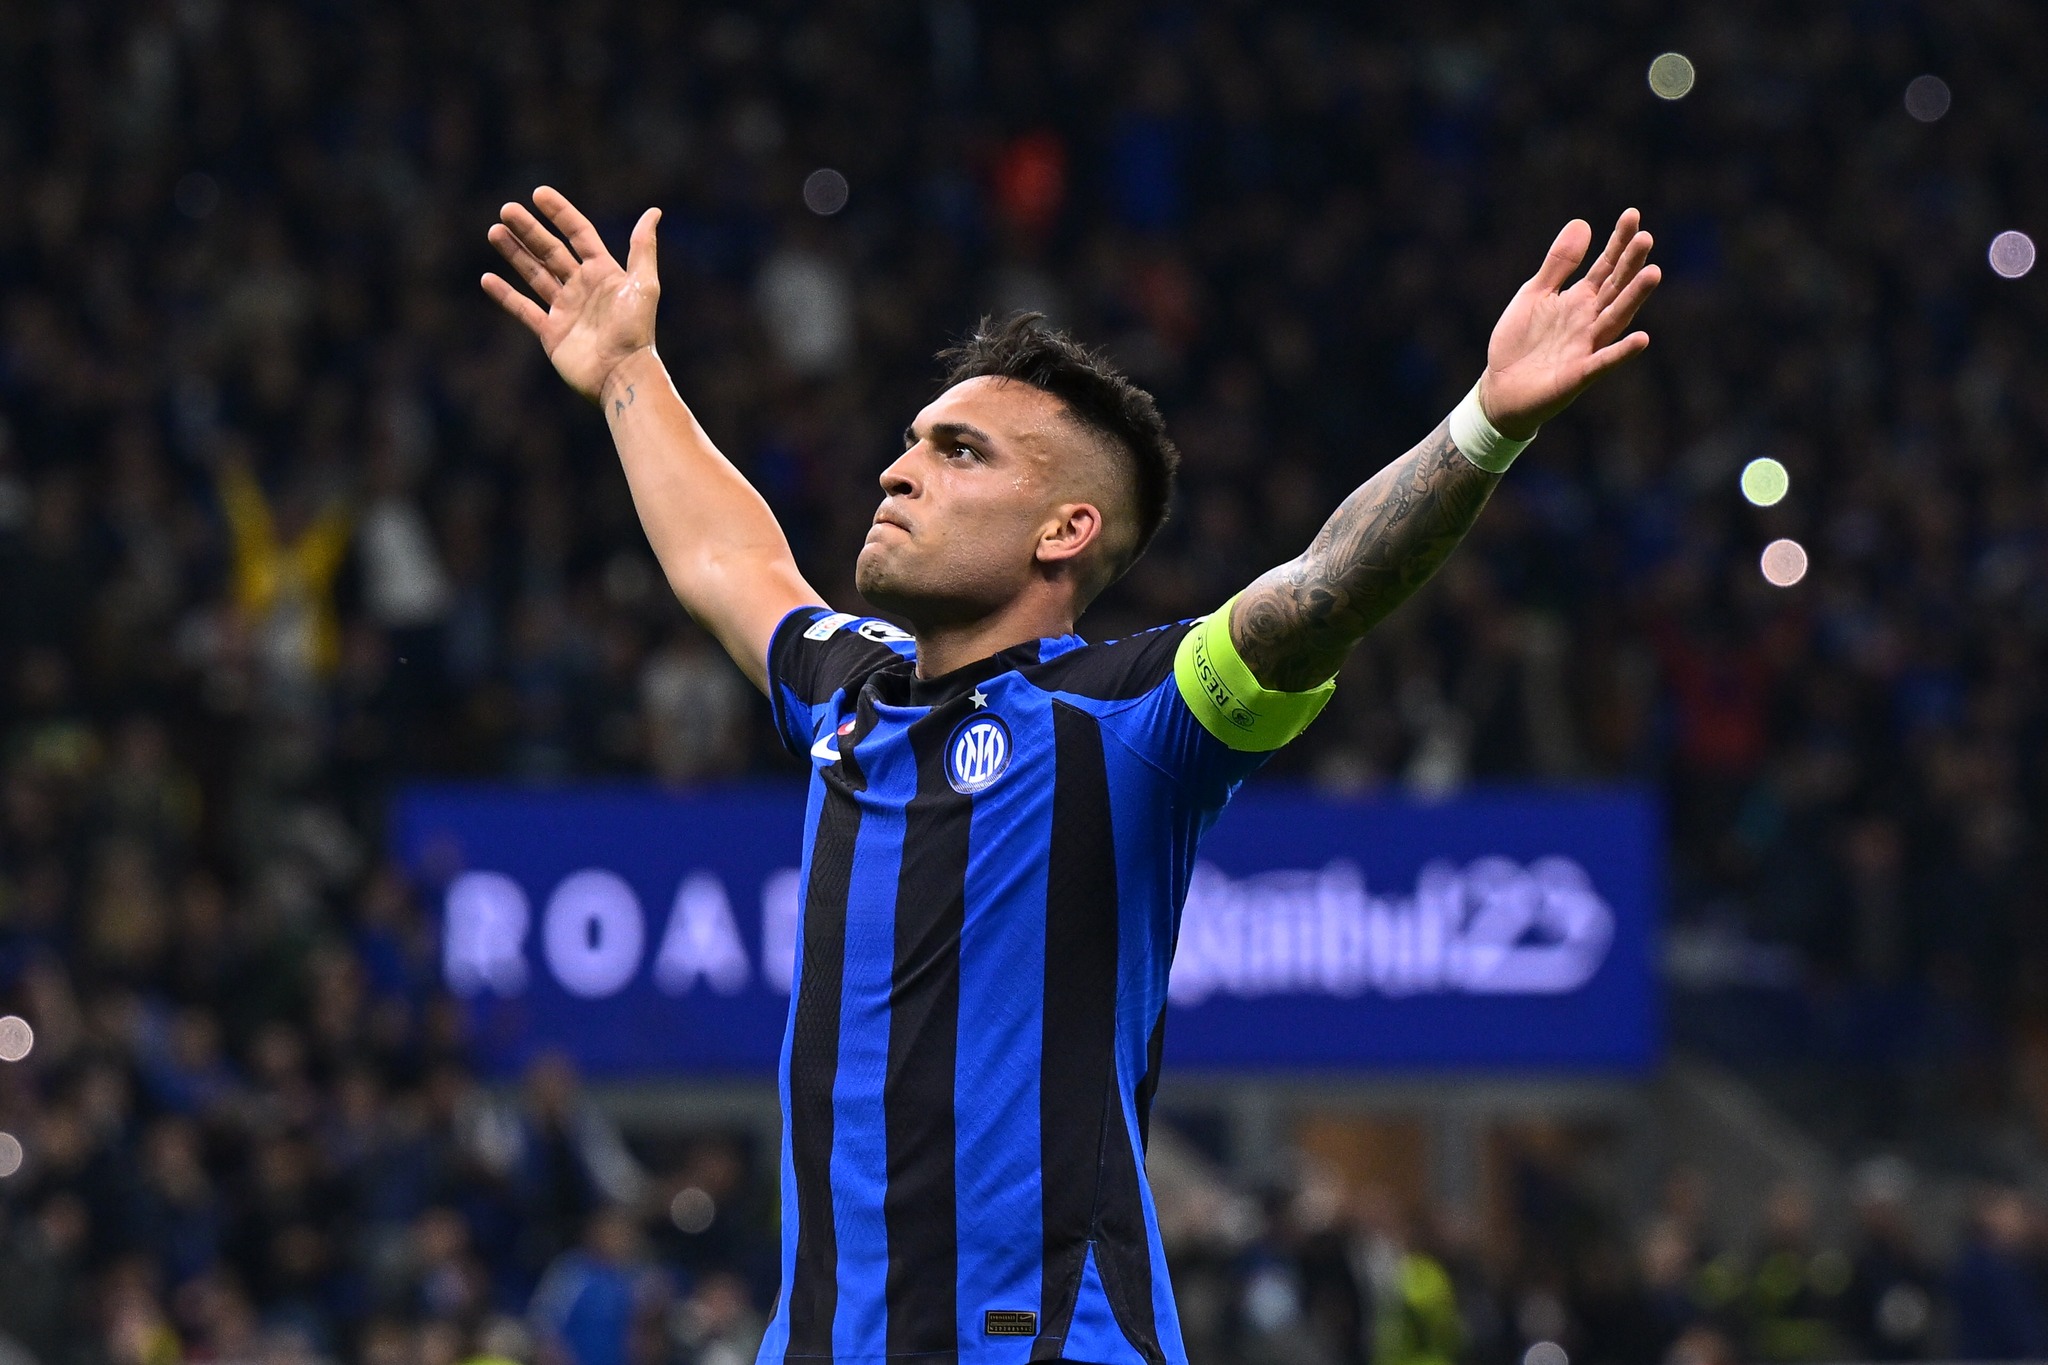 Inter vuelve a vencer al Milan y clasifica a la final de la Champions League luego de 13 años.